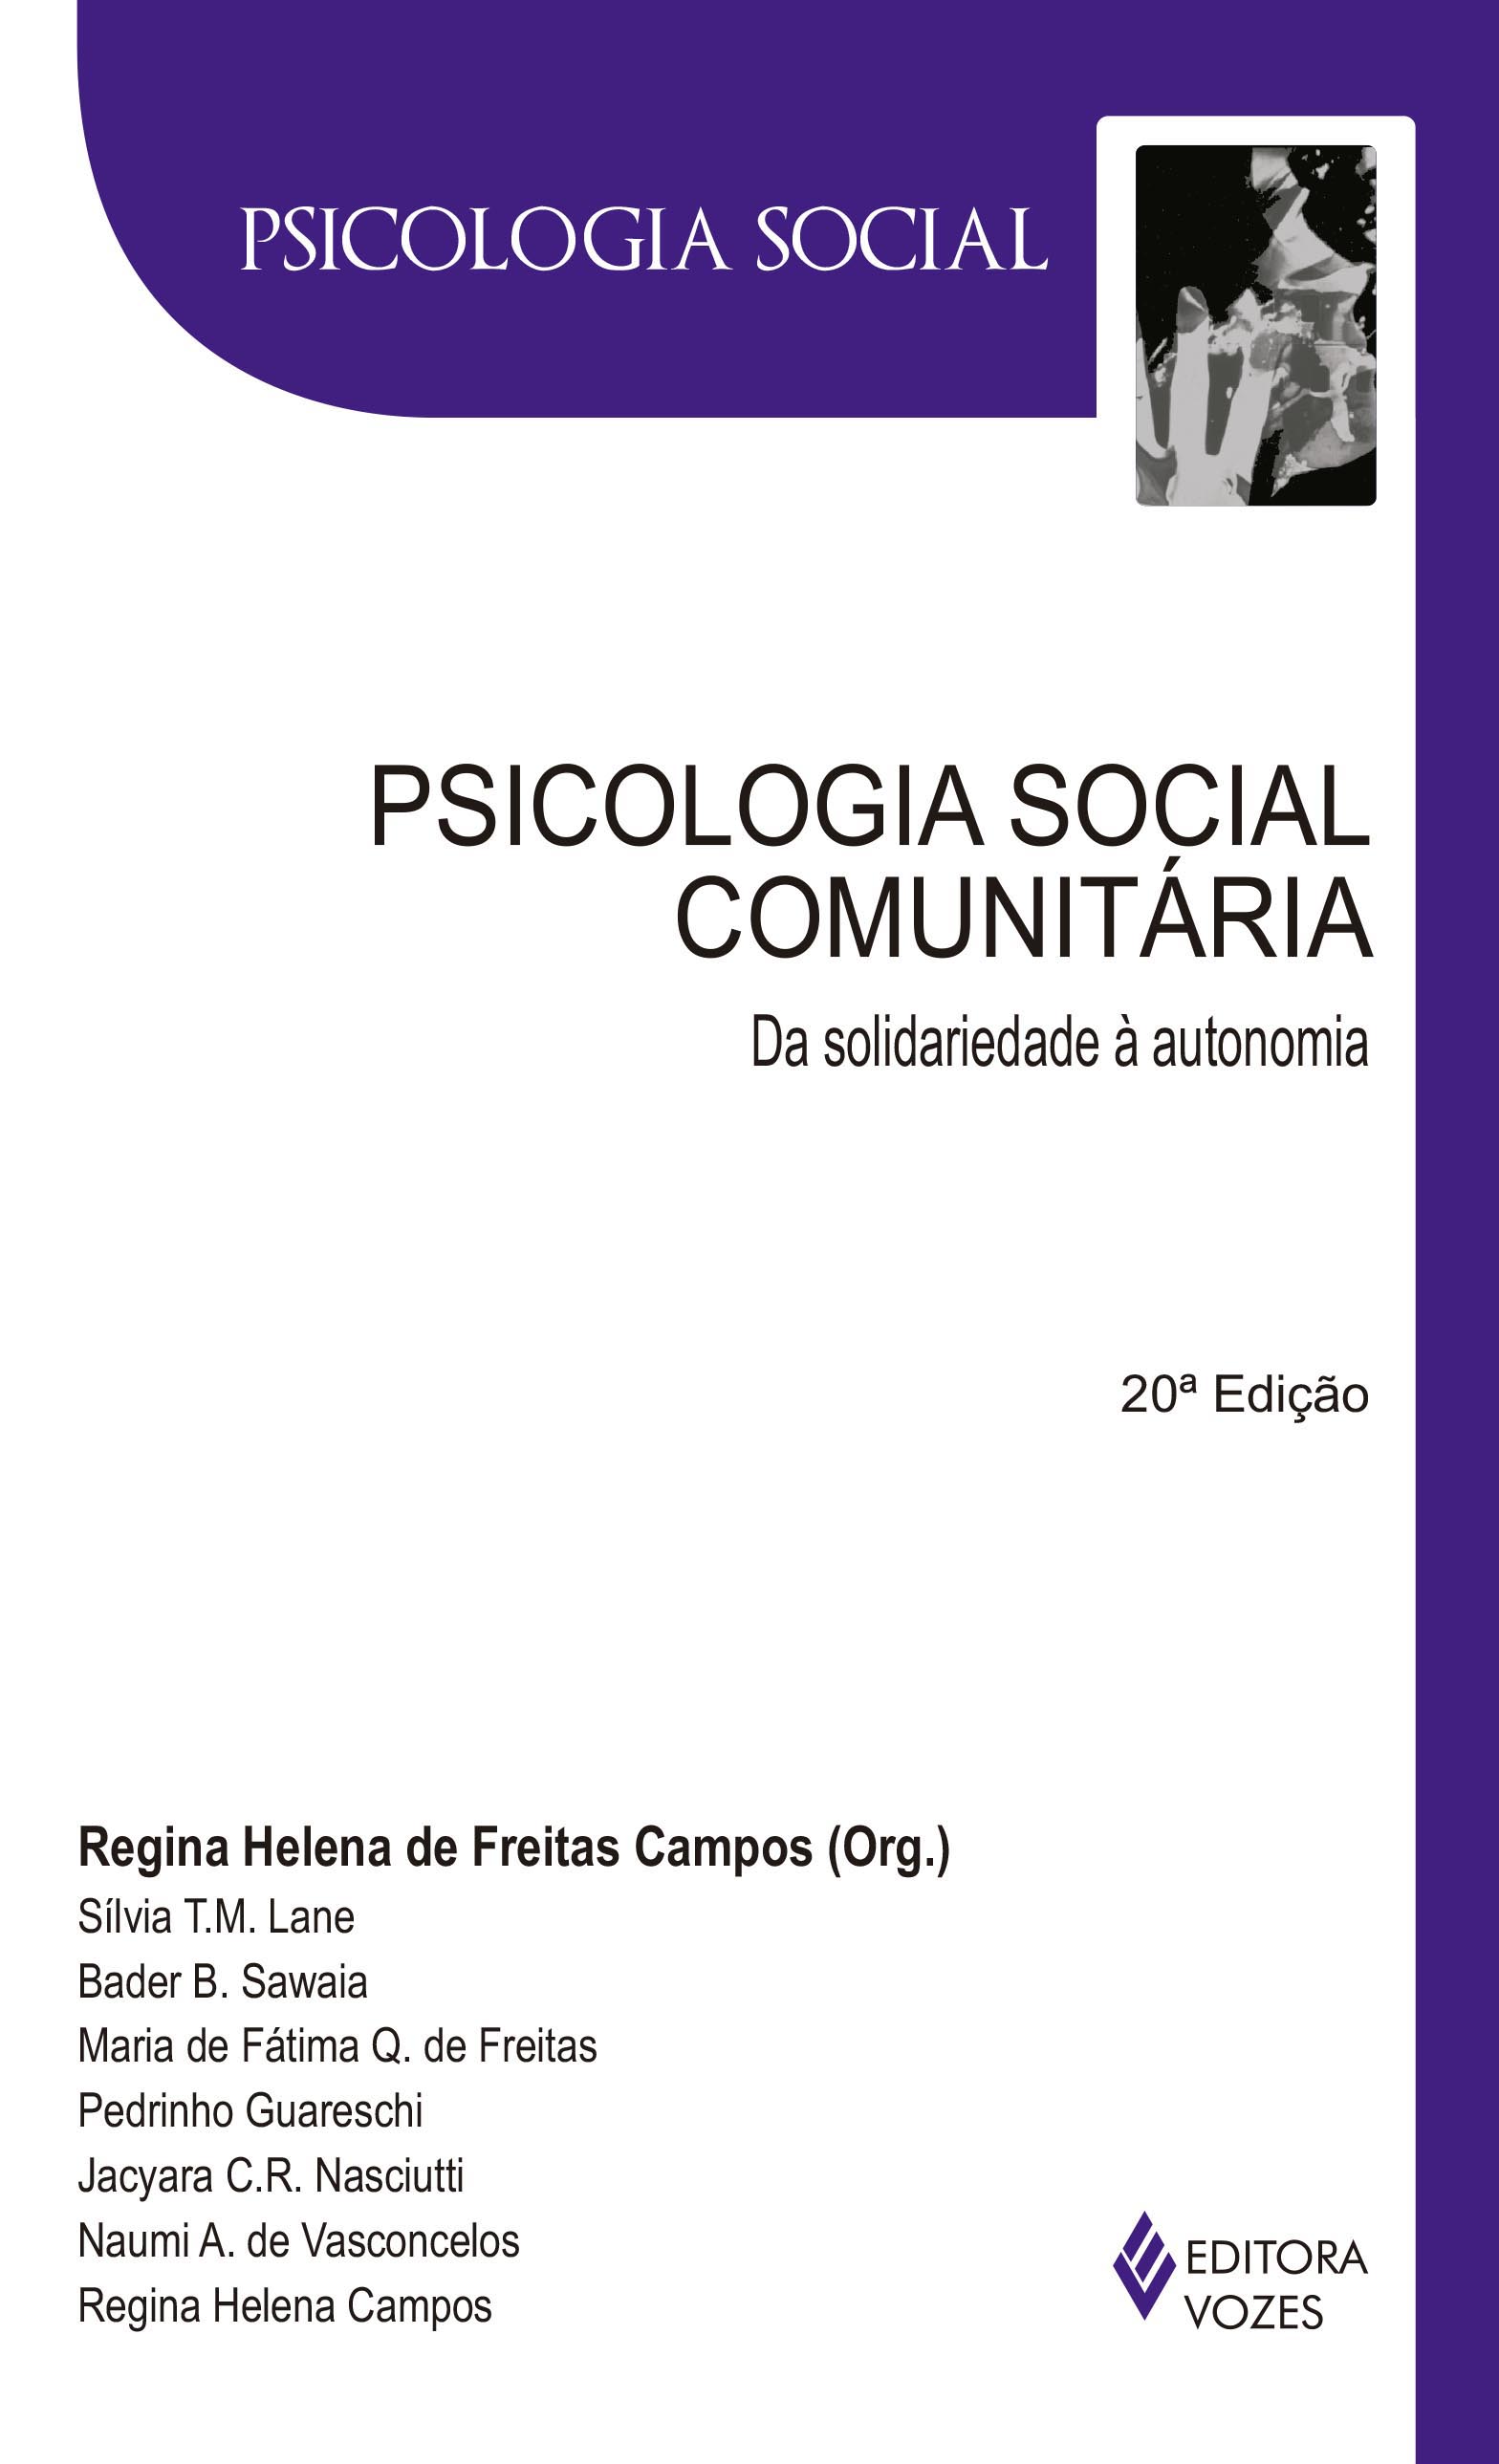 PSICOLOGIA SOCIAL COMUNITARIA - DA SOLIDARIEDADE A AUTONOMIA - COL. PSICOLO